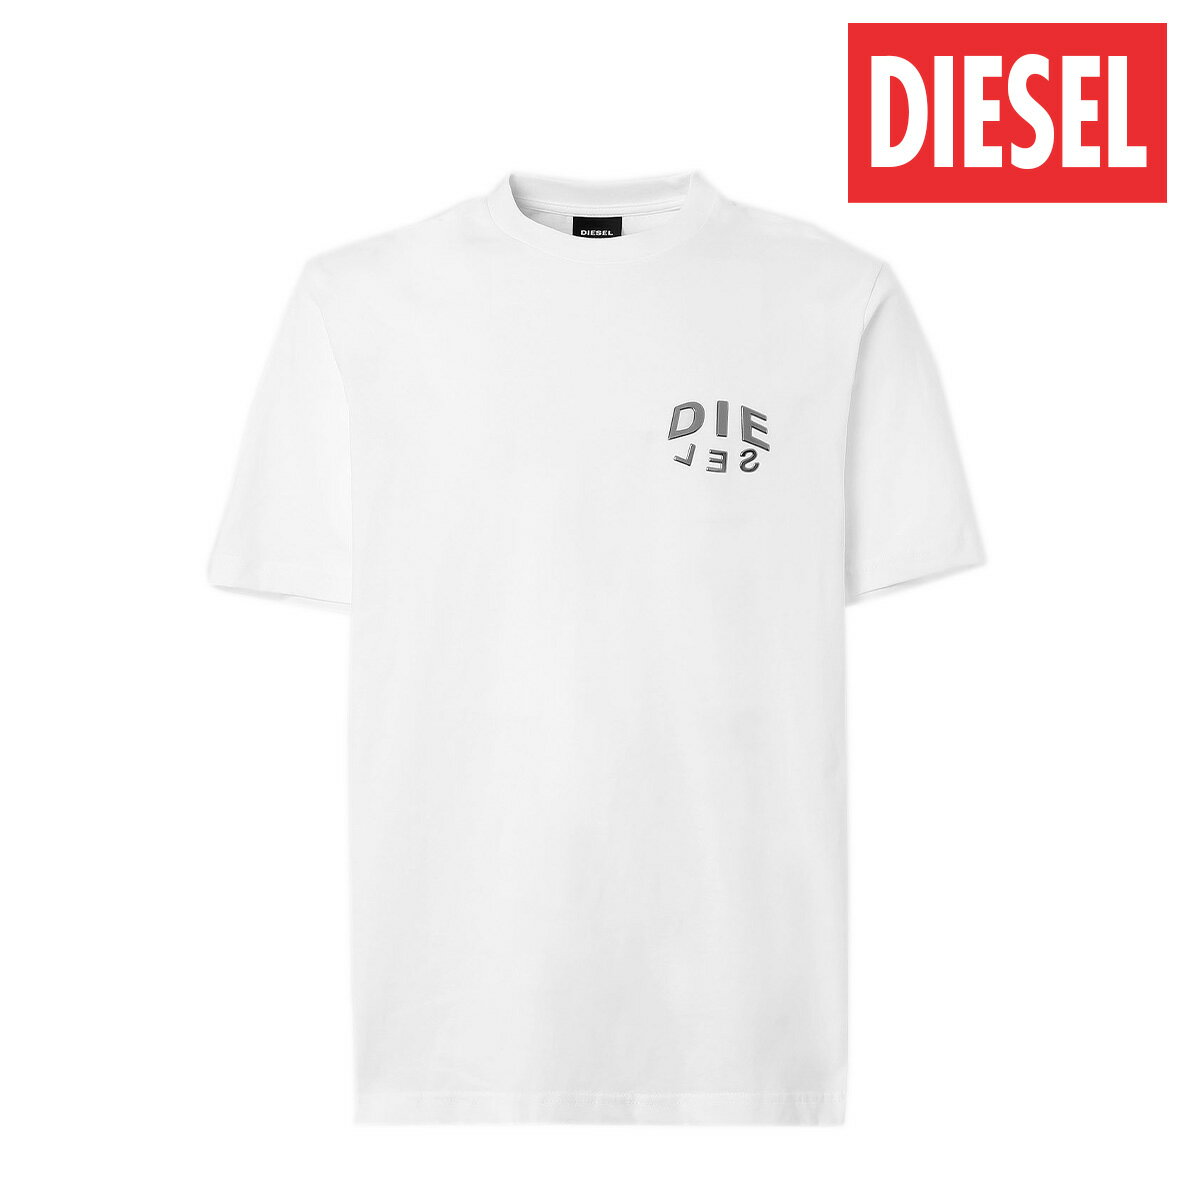 DIESEL ディーゼル レディース メンズ T-JUST-SLITS-A30 Tシャツ 半袖 ロゴ メタリック A016840PATI ホワイト